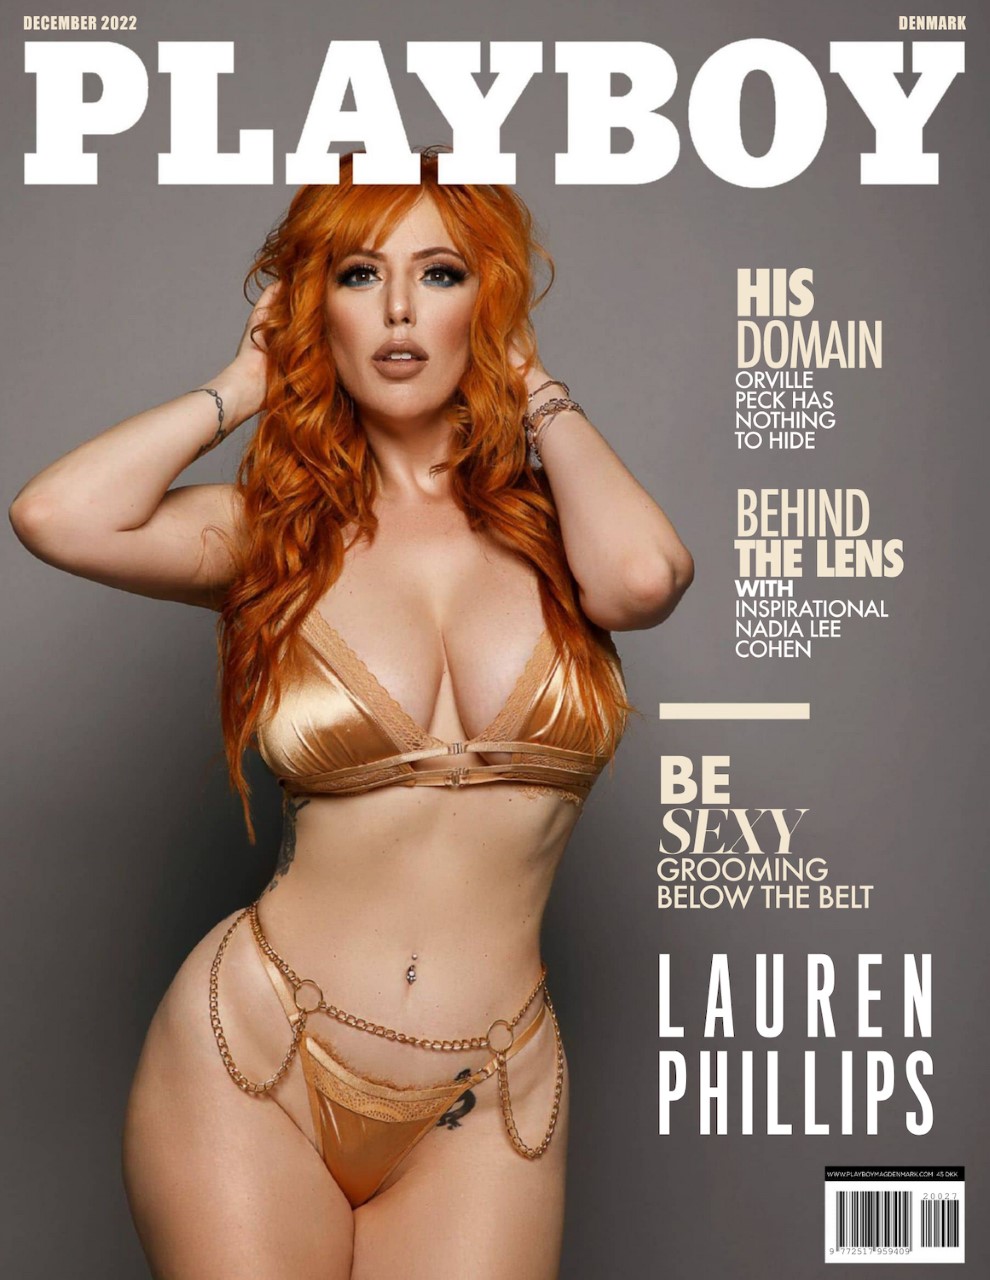 Lauren Phillips Scores Cover of Playboy Denmark for December